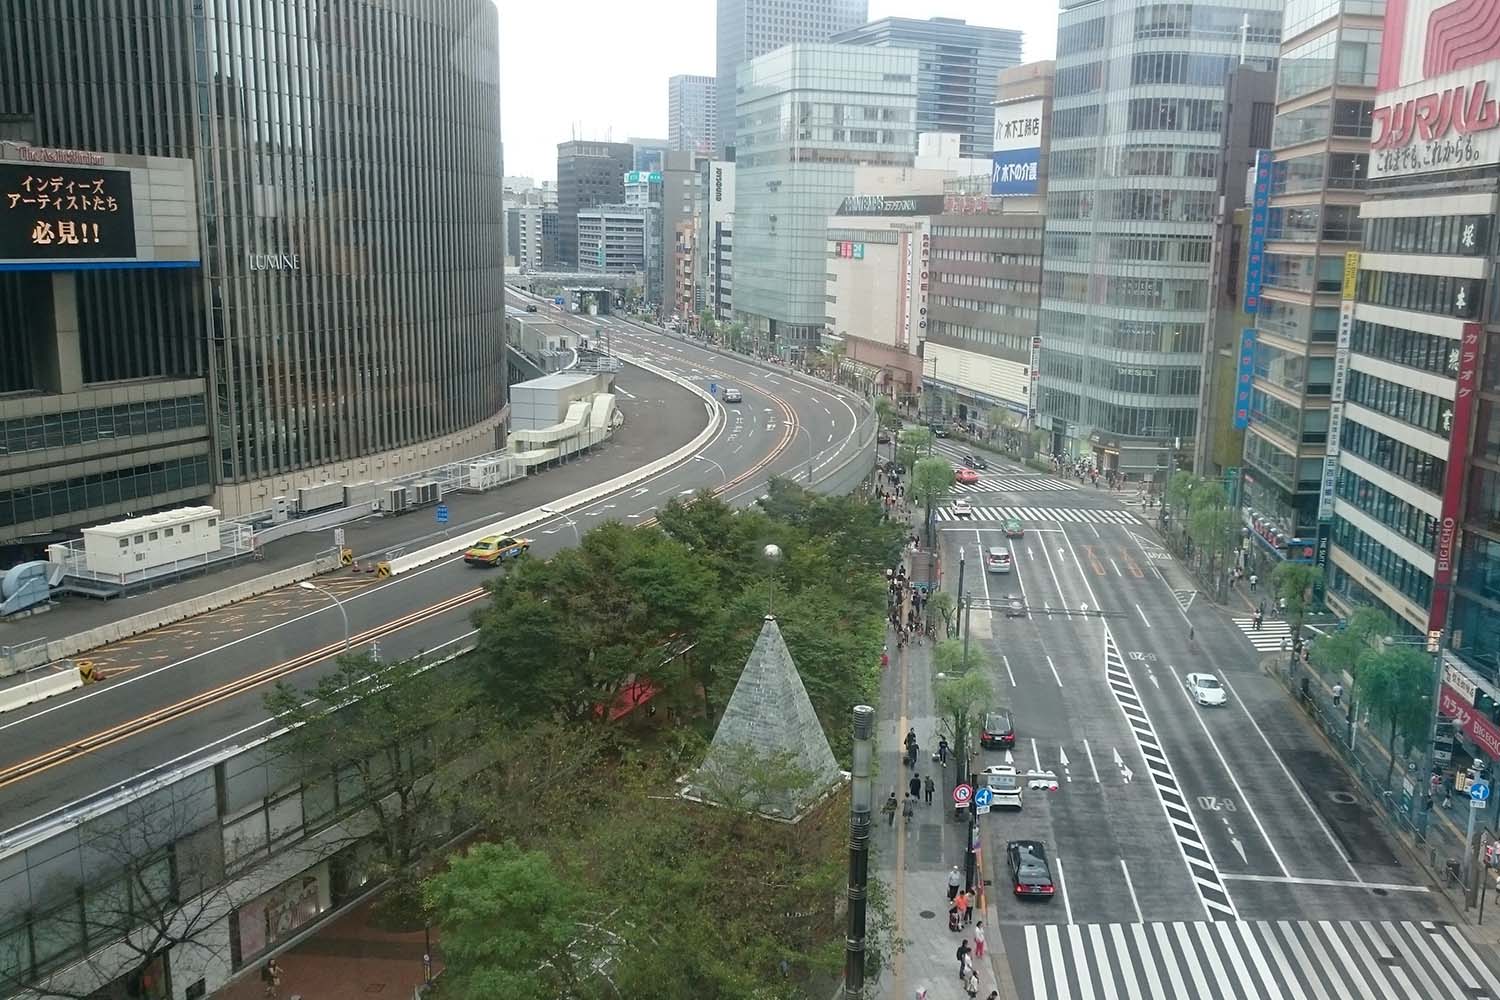 東京高速道路と銀座のビル街の写真 〜 画像2